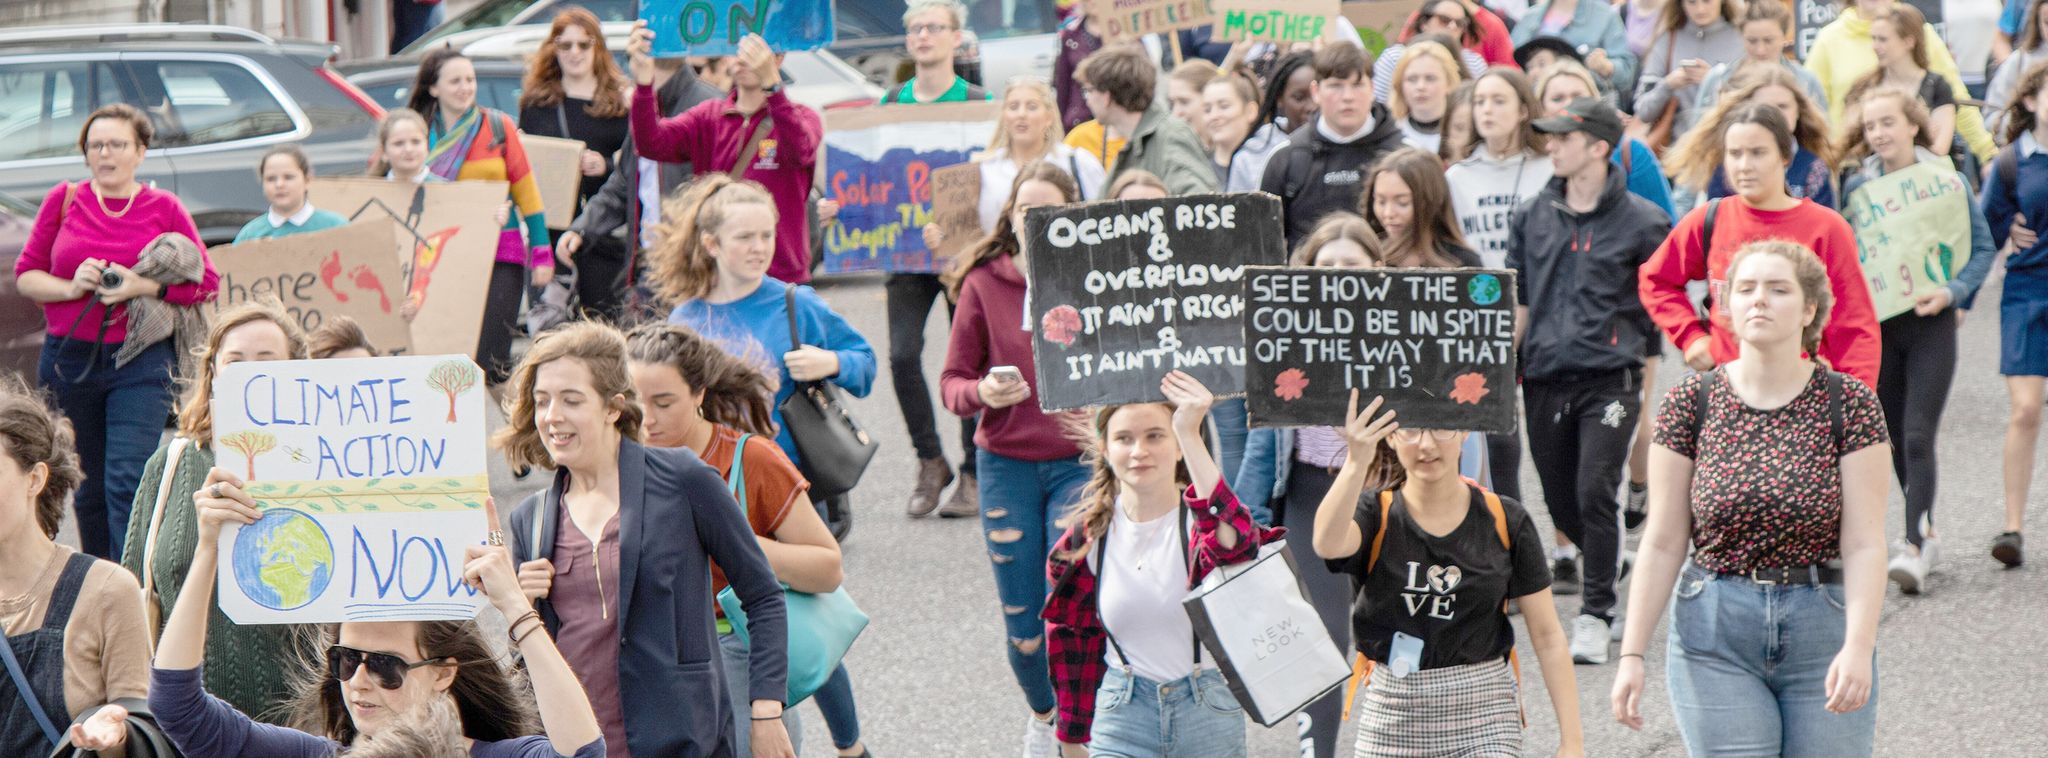 Klimaaktivismus Letzte Generation